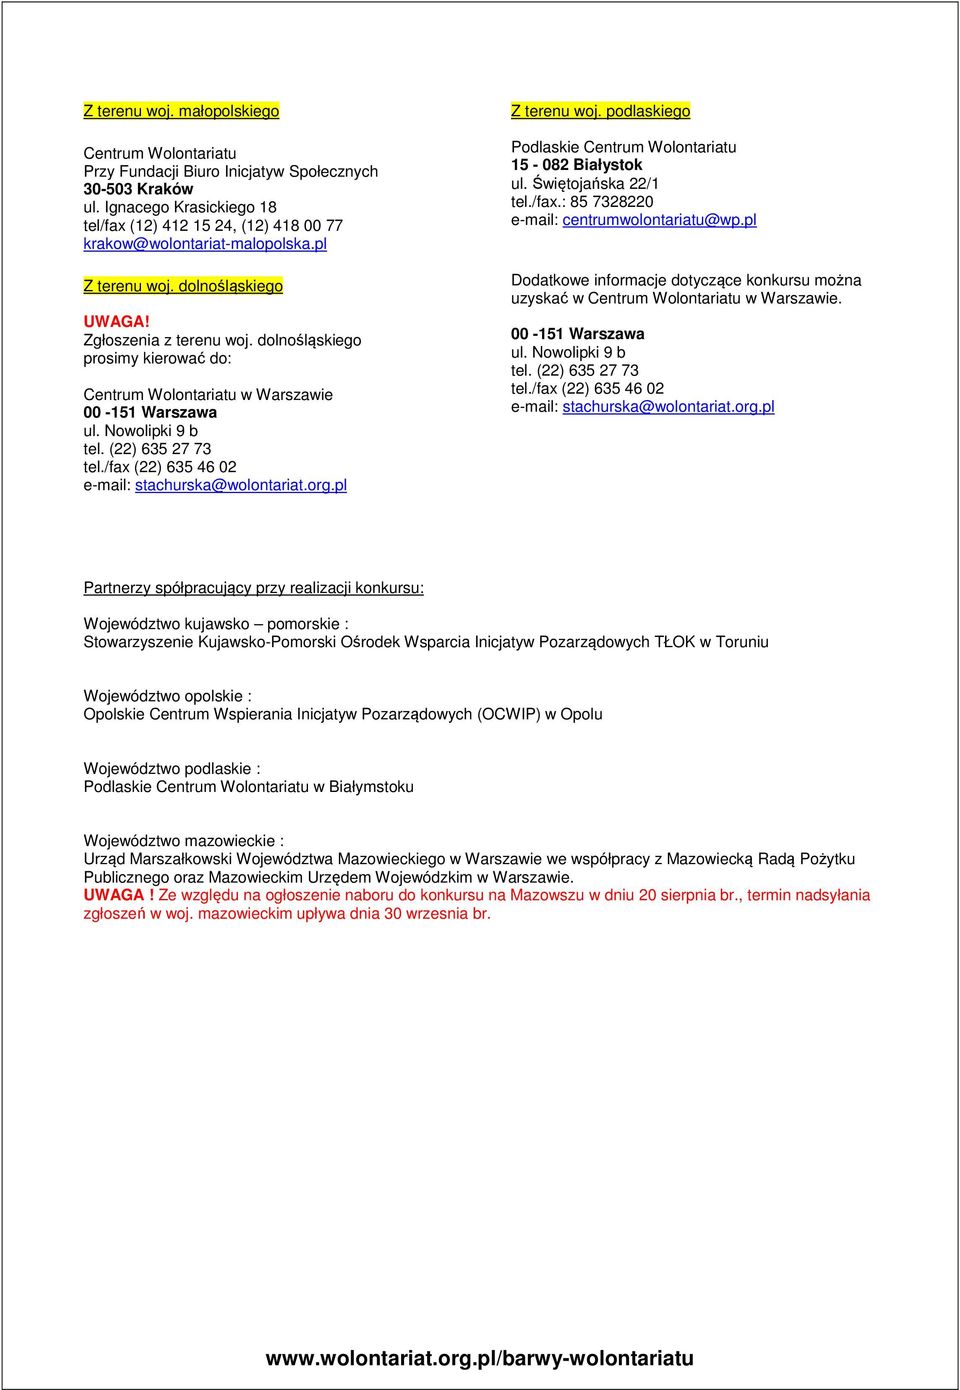 /fax (22) 635 46 02 e-mail: stachurska@wolontariat.org.pl Z terenu woj. podlaskiego Podlaskie 15-082 Białystok ul. Świętojańska 22/1 tel./fax.: 85 7328220 e-mail: centrumwolontariatu@wp.